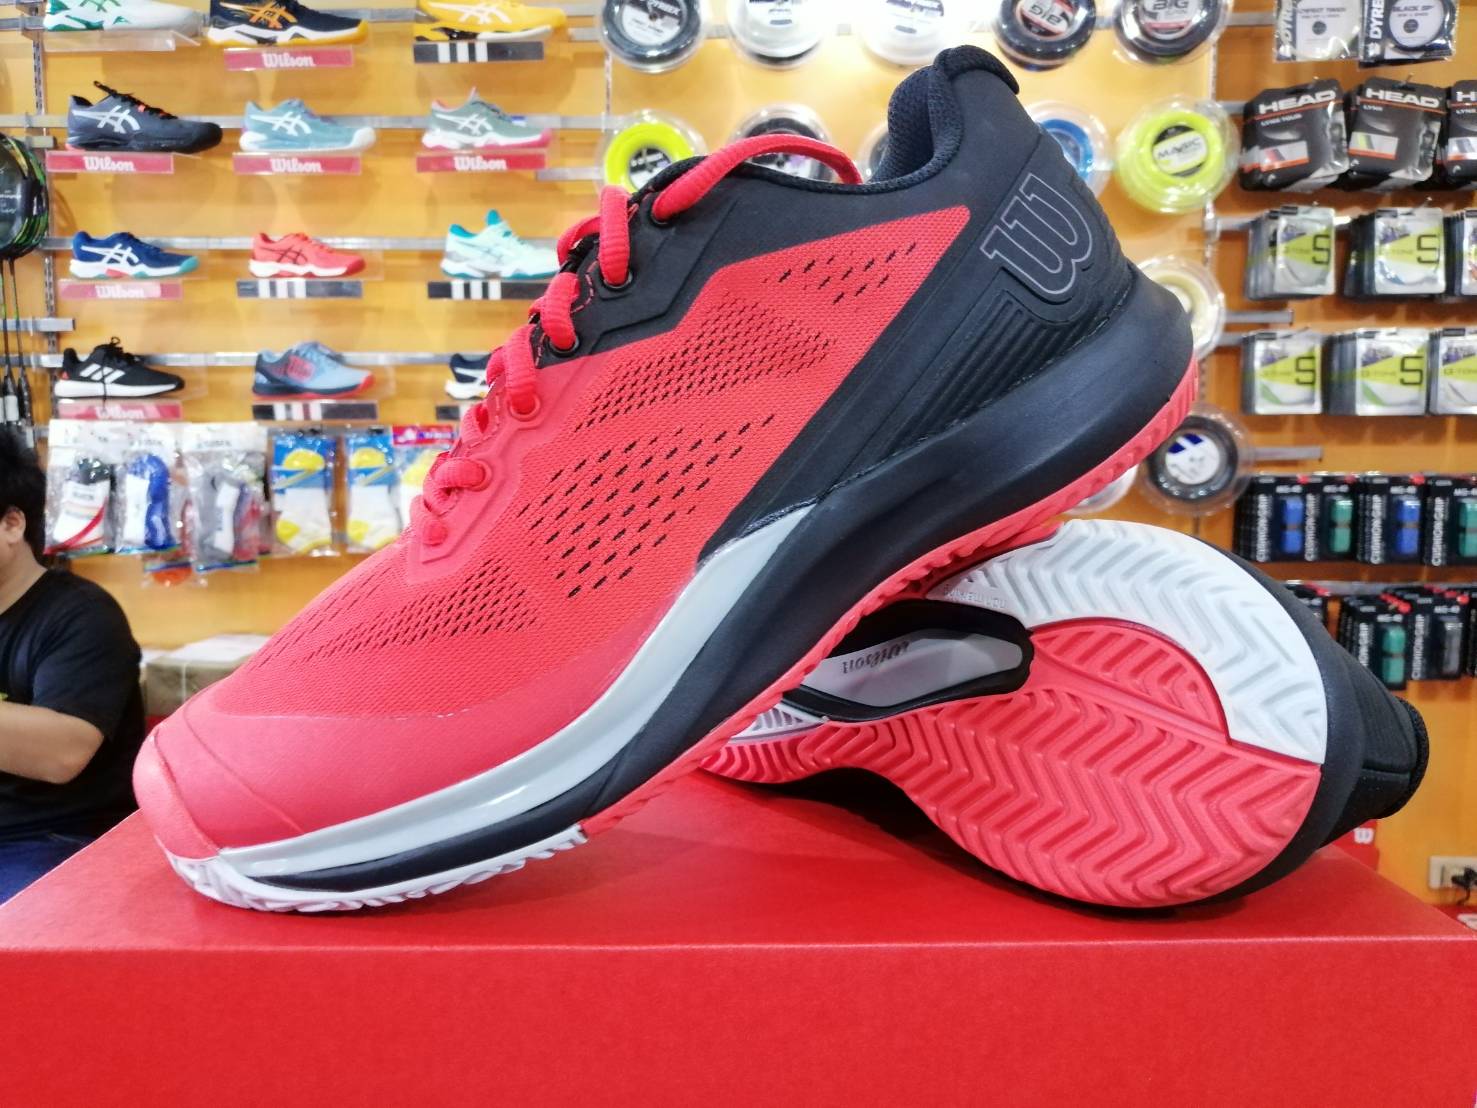 รองเท้าเทนนิสรุ่นใหม่จาก Wilson Rush Pro 3.5 (ผู้ชายเริ่มที่ เบอร์ US 7.5-11.5 ) ราคาลดแล้ว 3,300 บาท